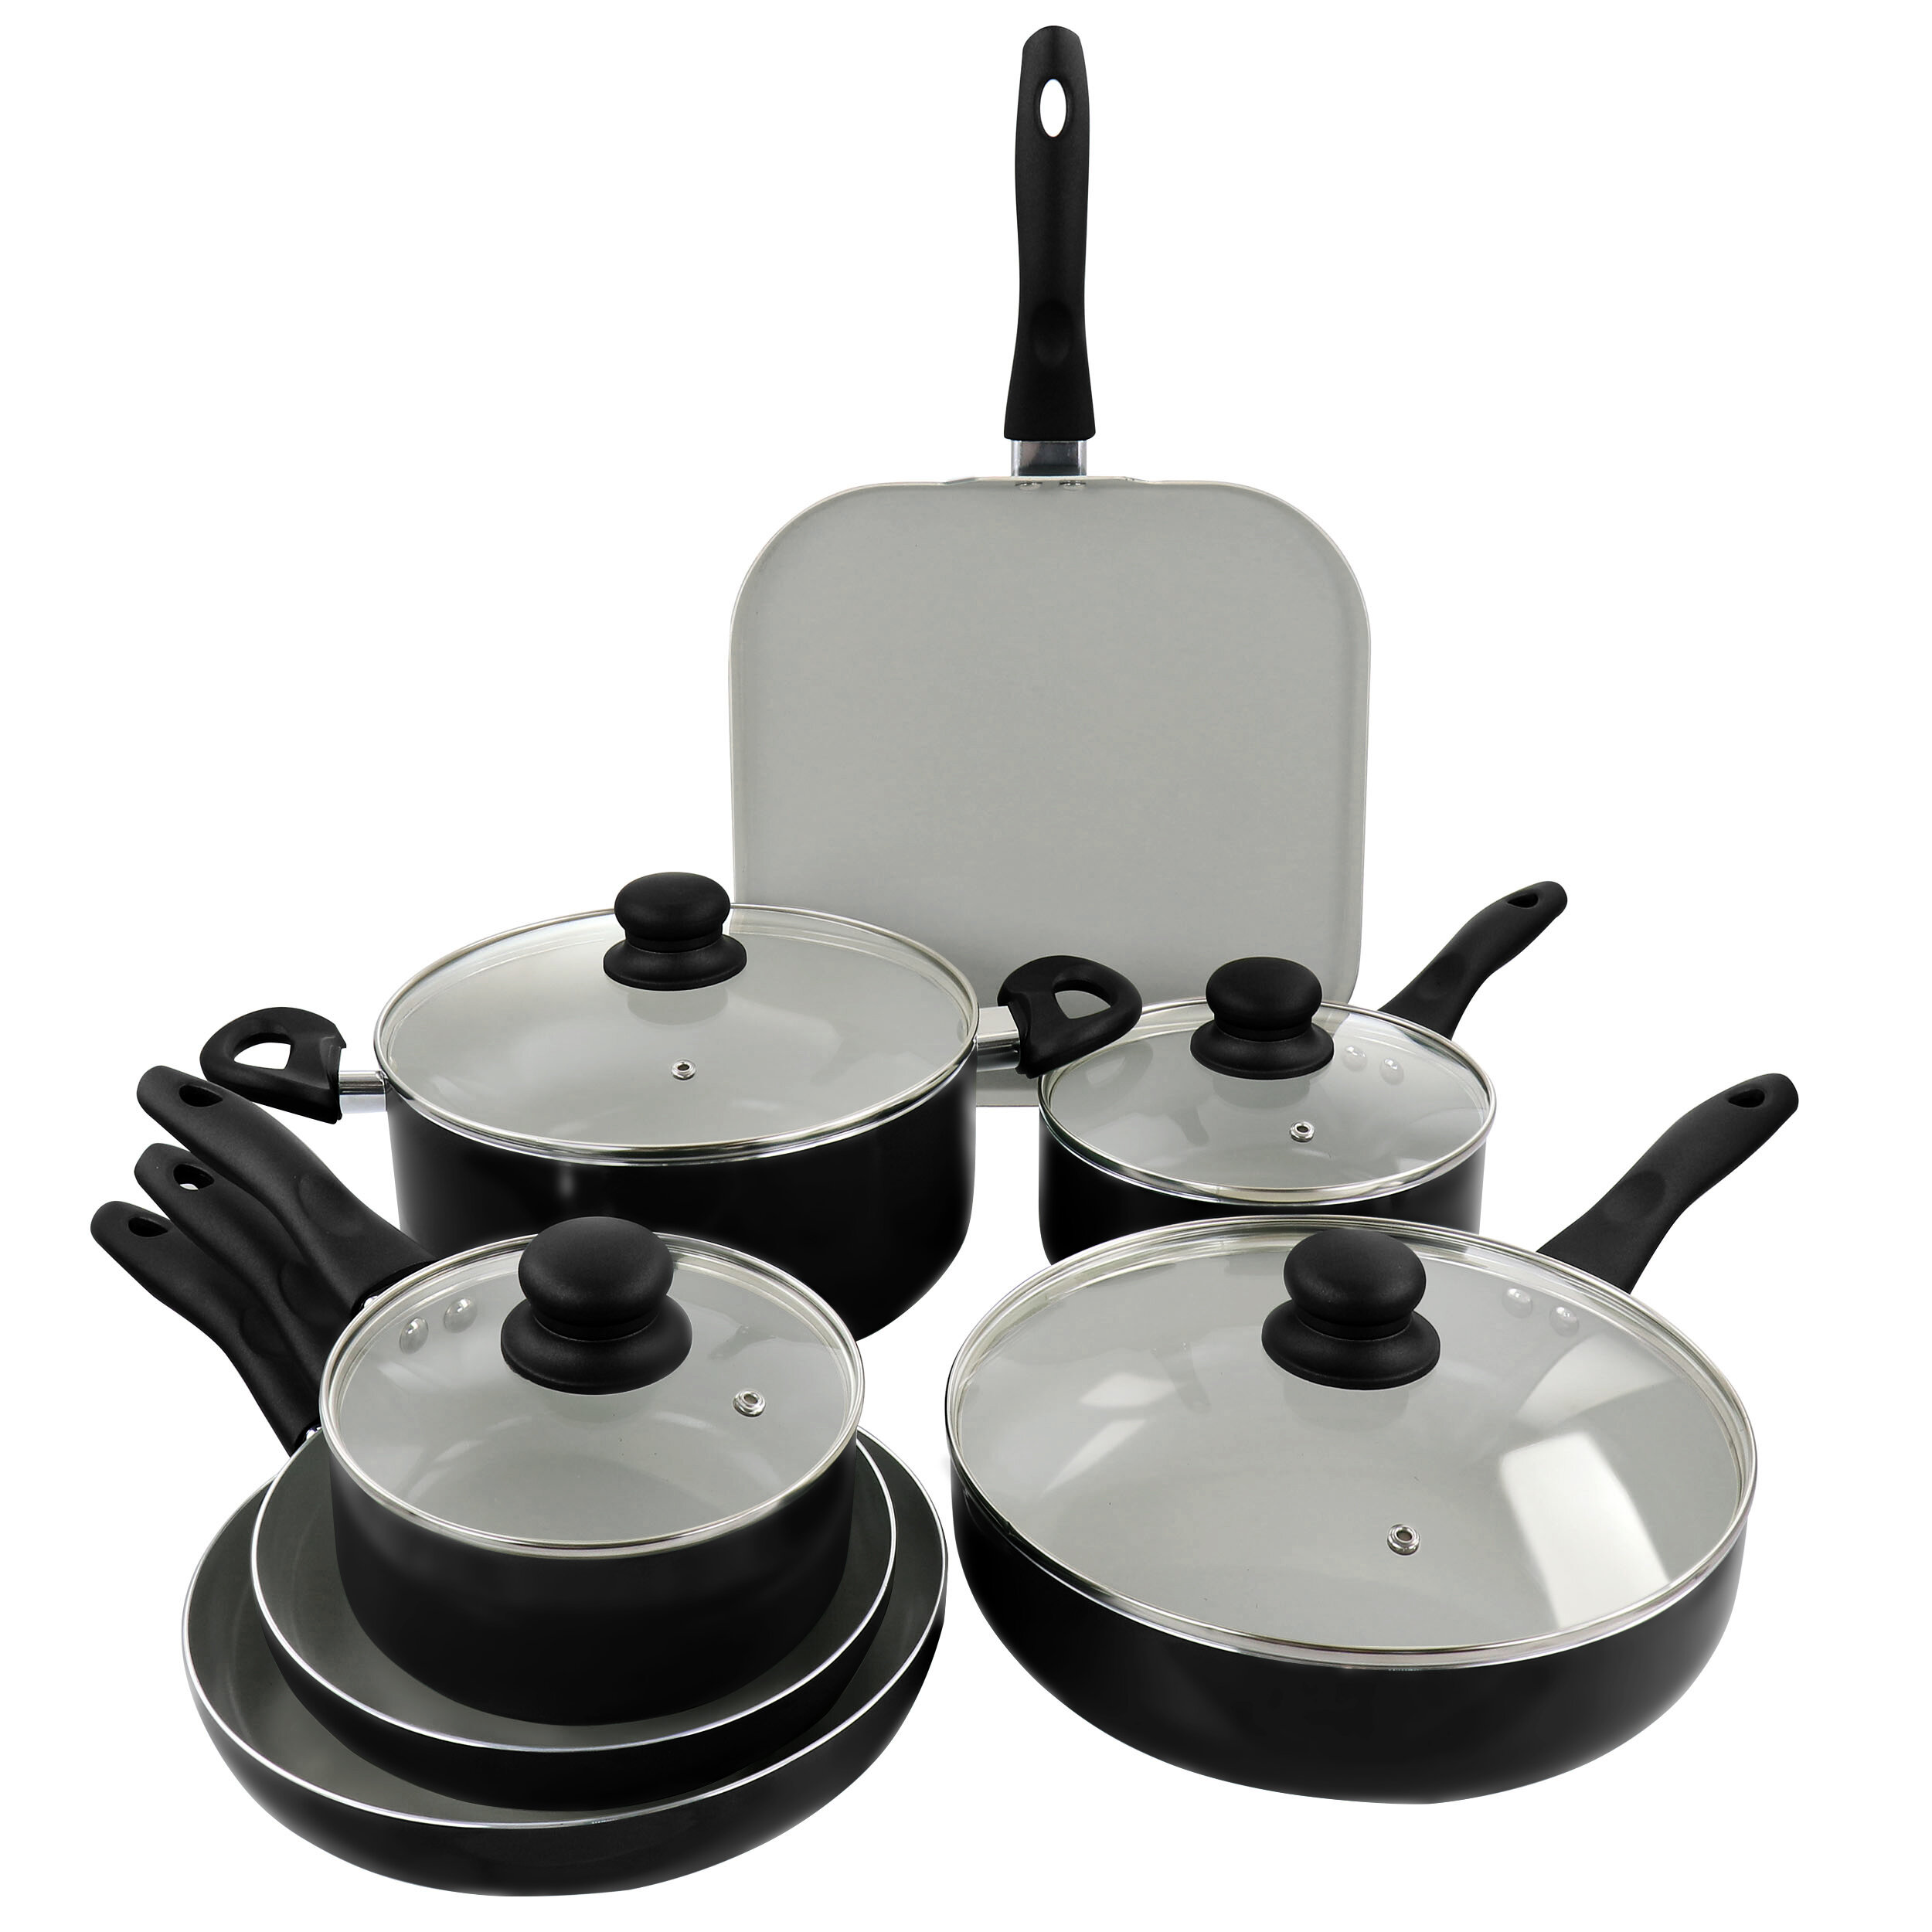 https://assets.wfcdn.com/im/69310226/compr-r85/1846/184661259/gibson-ceramic-nonstick-aluminum-11pc-black-cookware-set.jpg